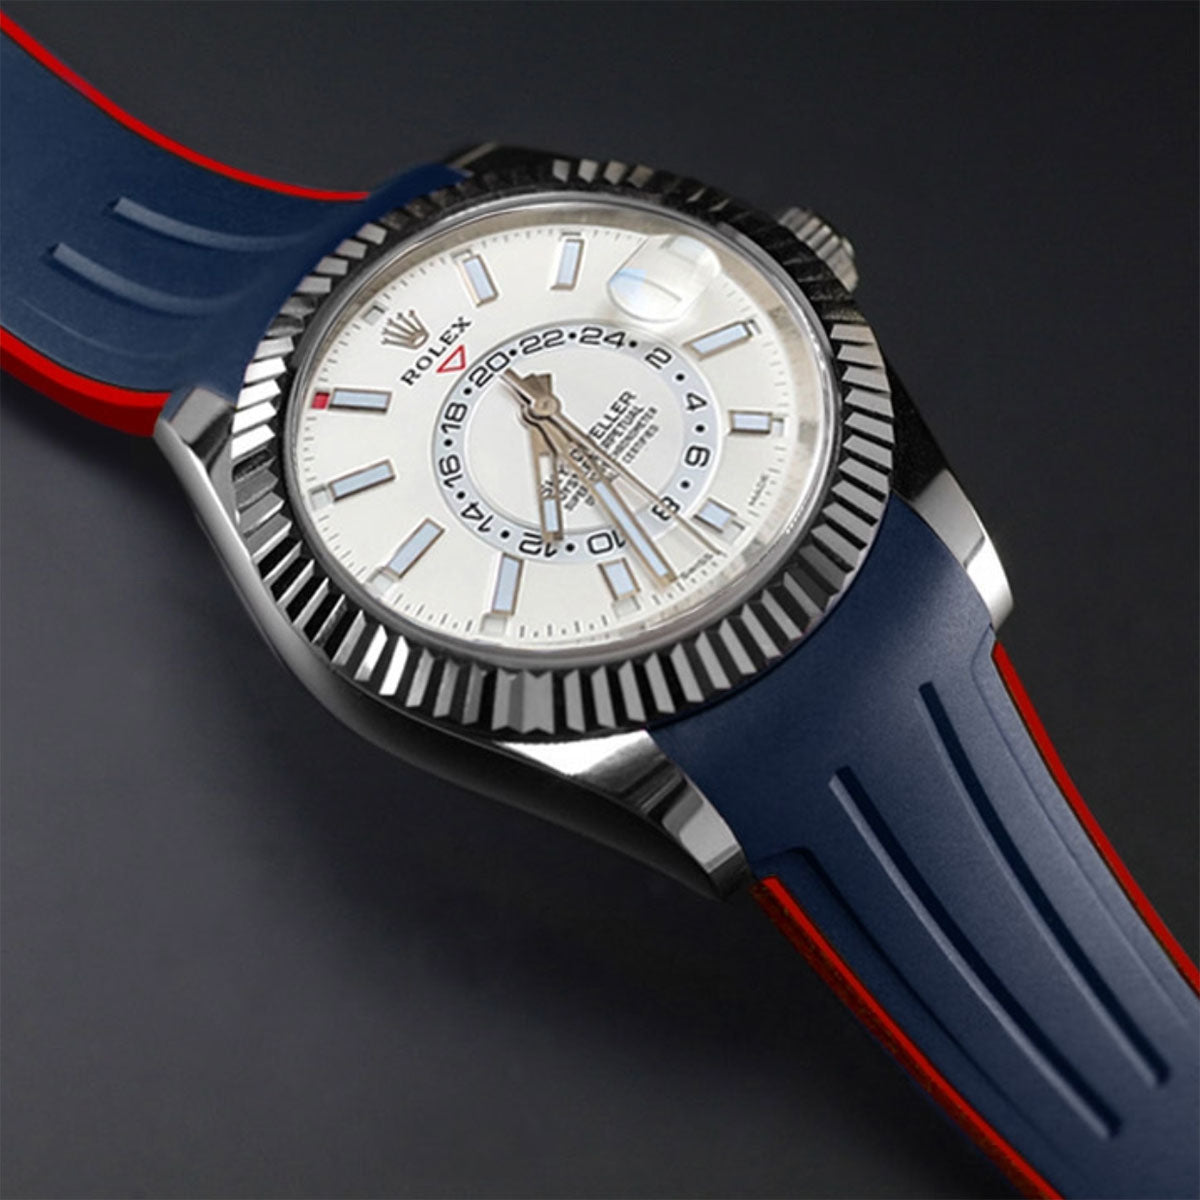 Rolex - Rubber B - Bracelet caoutchouc pour Sky-Dweller Oyster bracelet - watch band leather strap - ABP Concept -